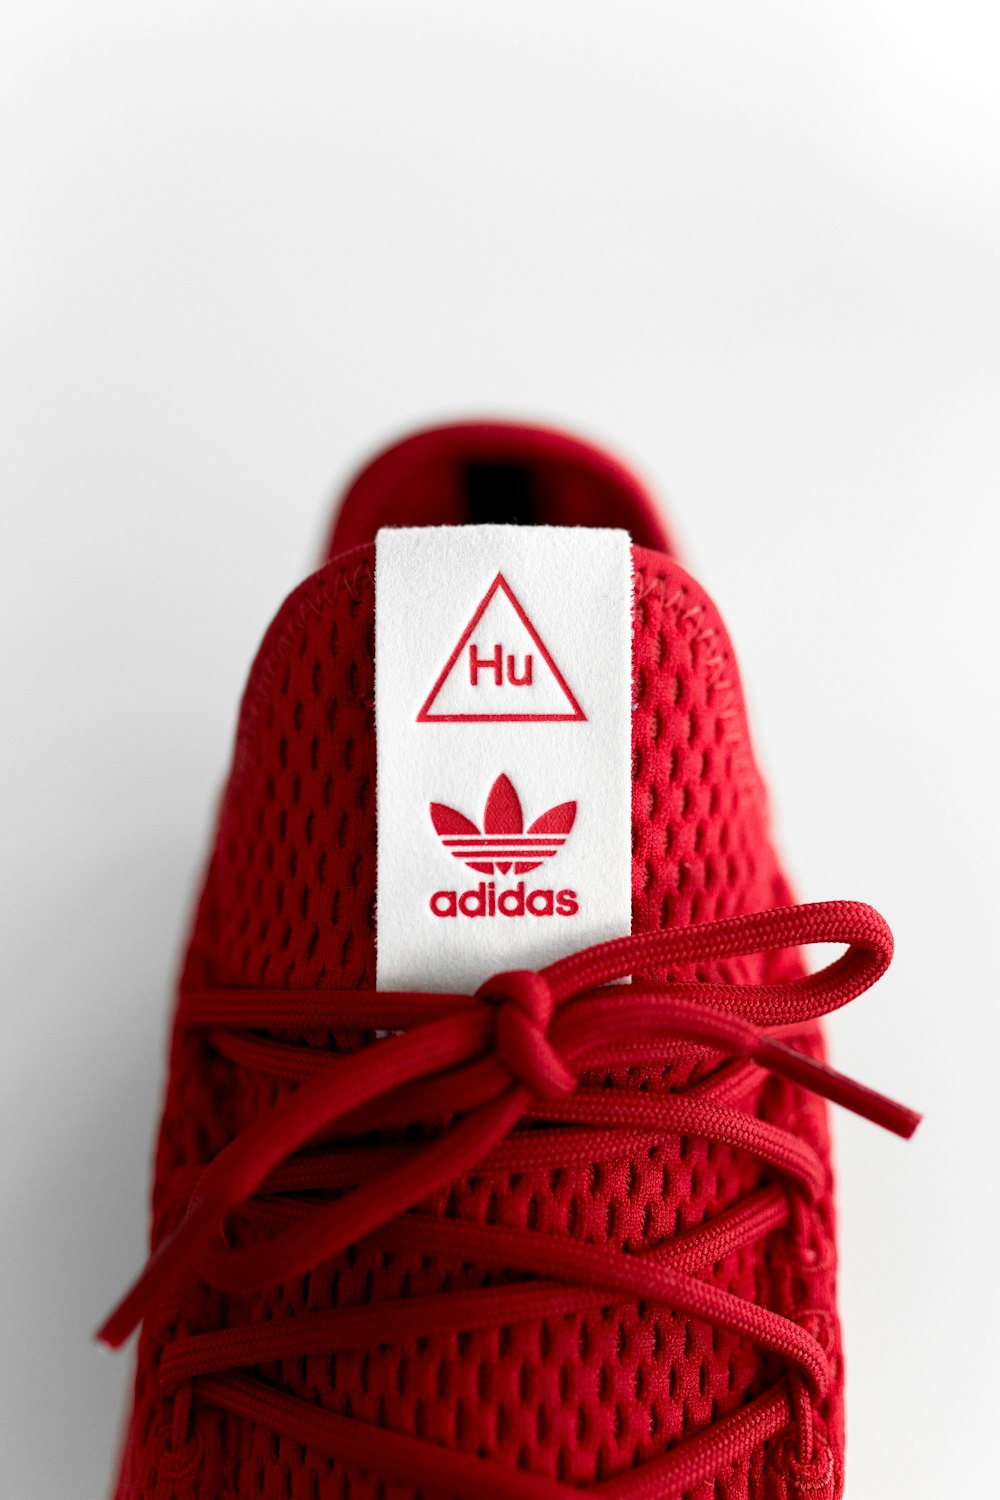 Foto Zapatillas adidas rojas sin emparejar – Imagen Mínimo gratis en  Unsplash